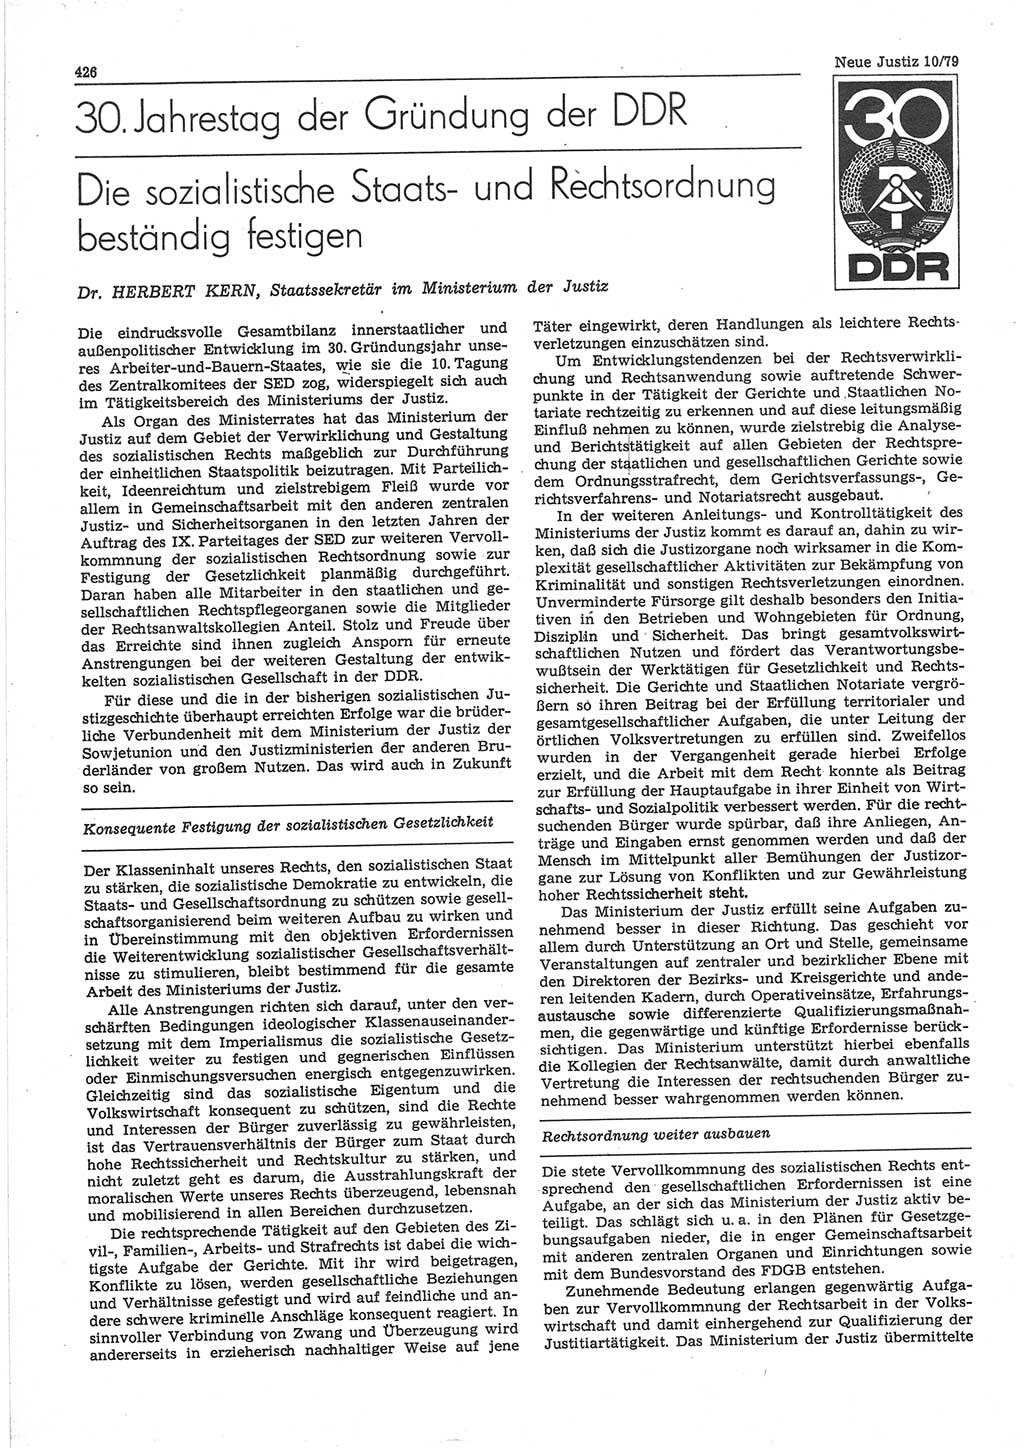 Neue Justiz (NJ), Zeitschrift für sozialistisches Recht und Gesetzlichkeit [Deutsche Demokratische Republik (DDR)], 33. Jahrgang 1979, Seite 426 (NJ DDR 1979, S. 426)